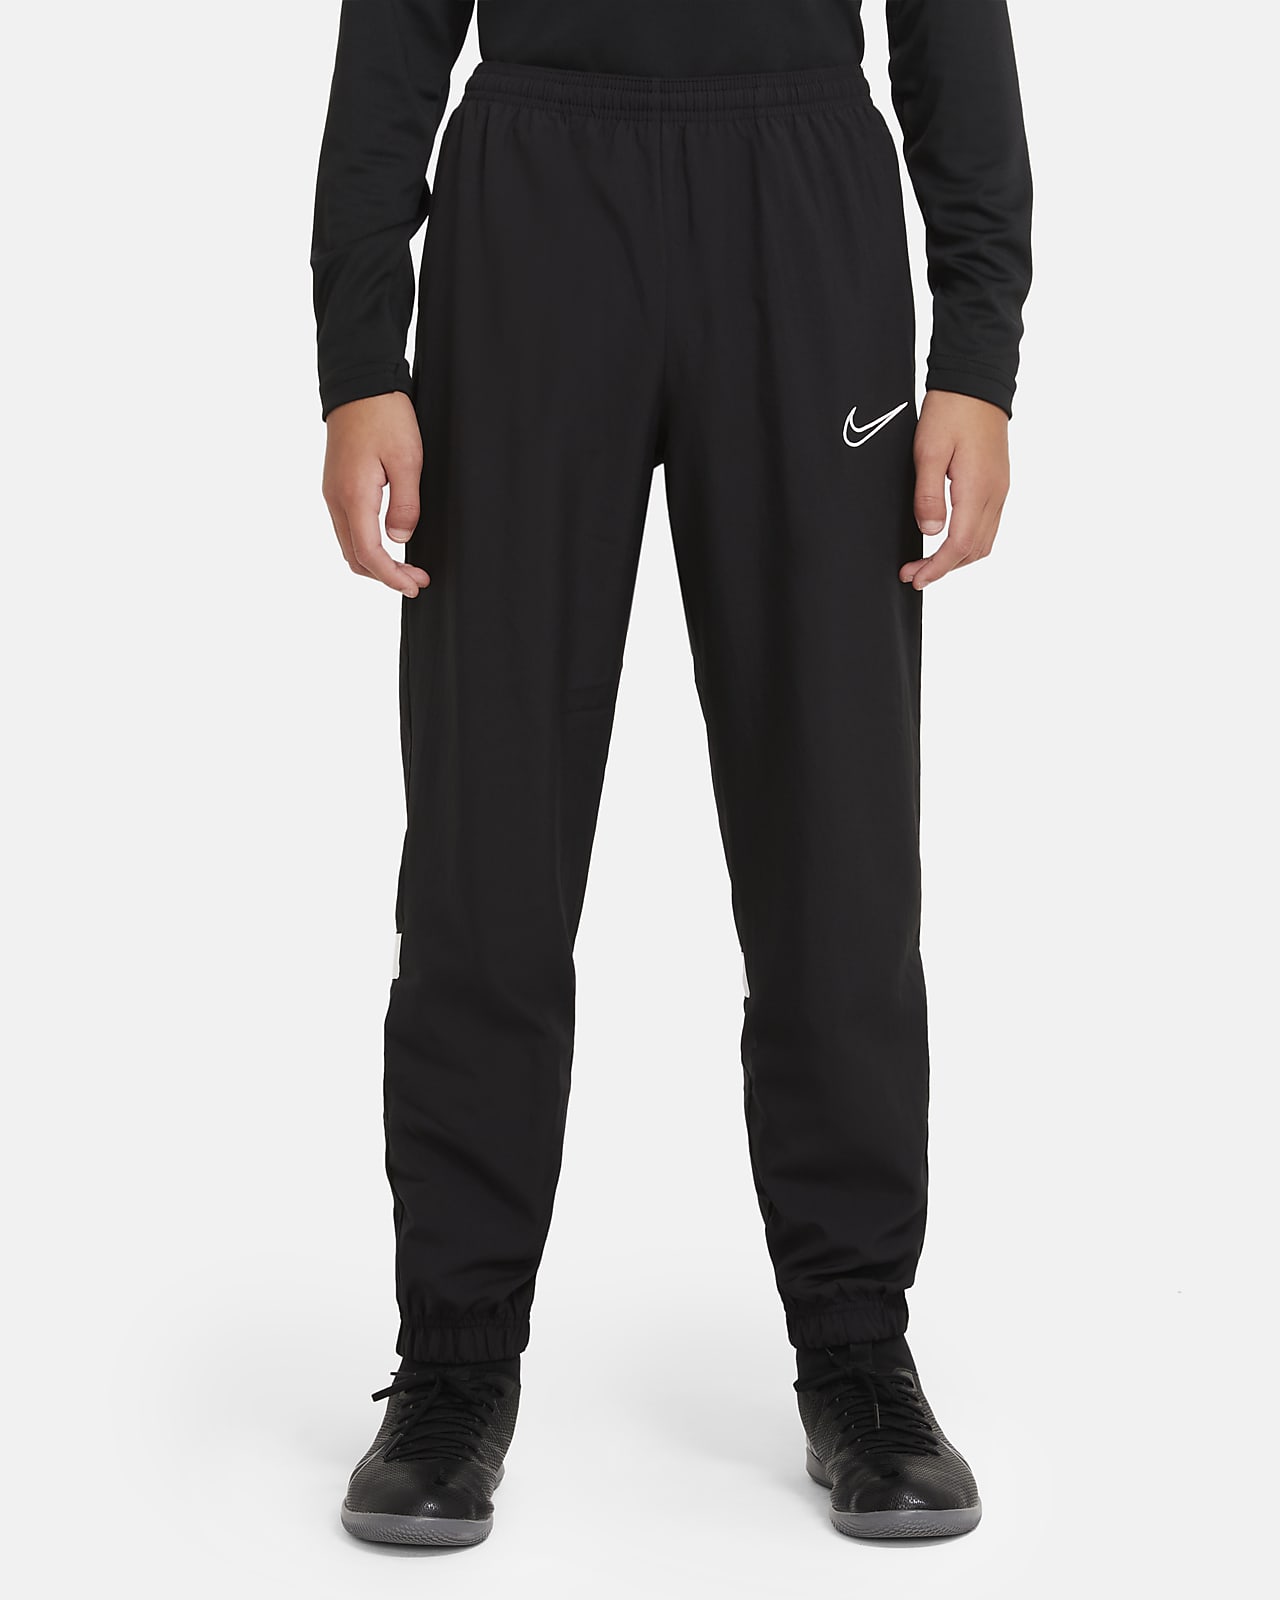 Nike Dri-FIT Academy Pantalons de xandall de teixit Woven de futbol - Nen/a